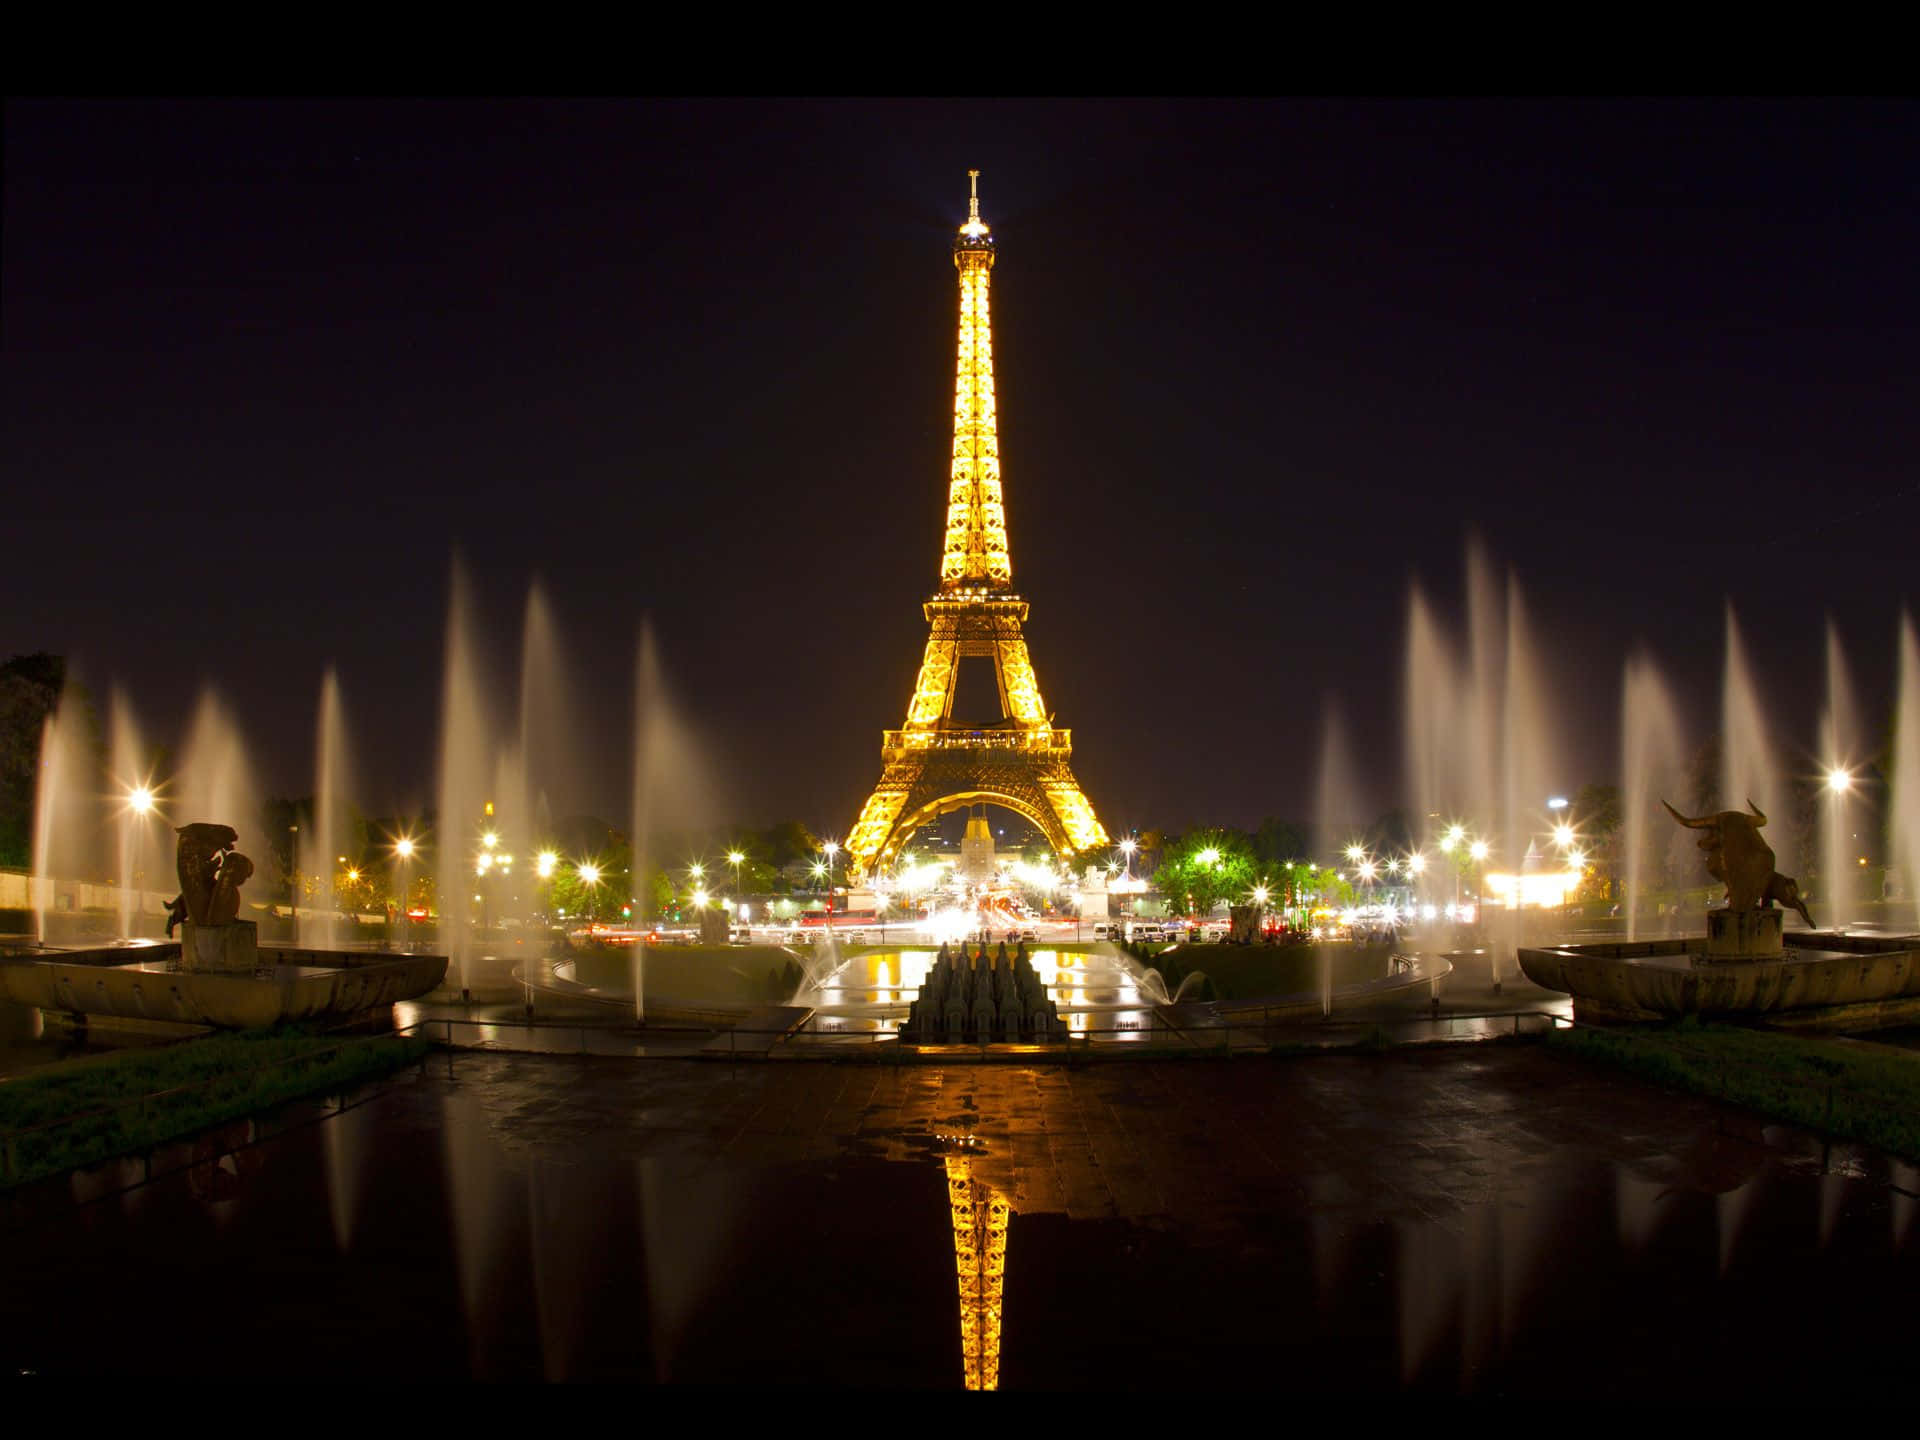 Laiconica E Impressionante Torre Eiffel Illuminata Di Notte A Parigi.